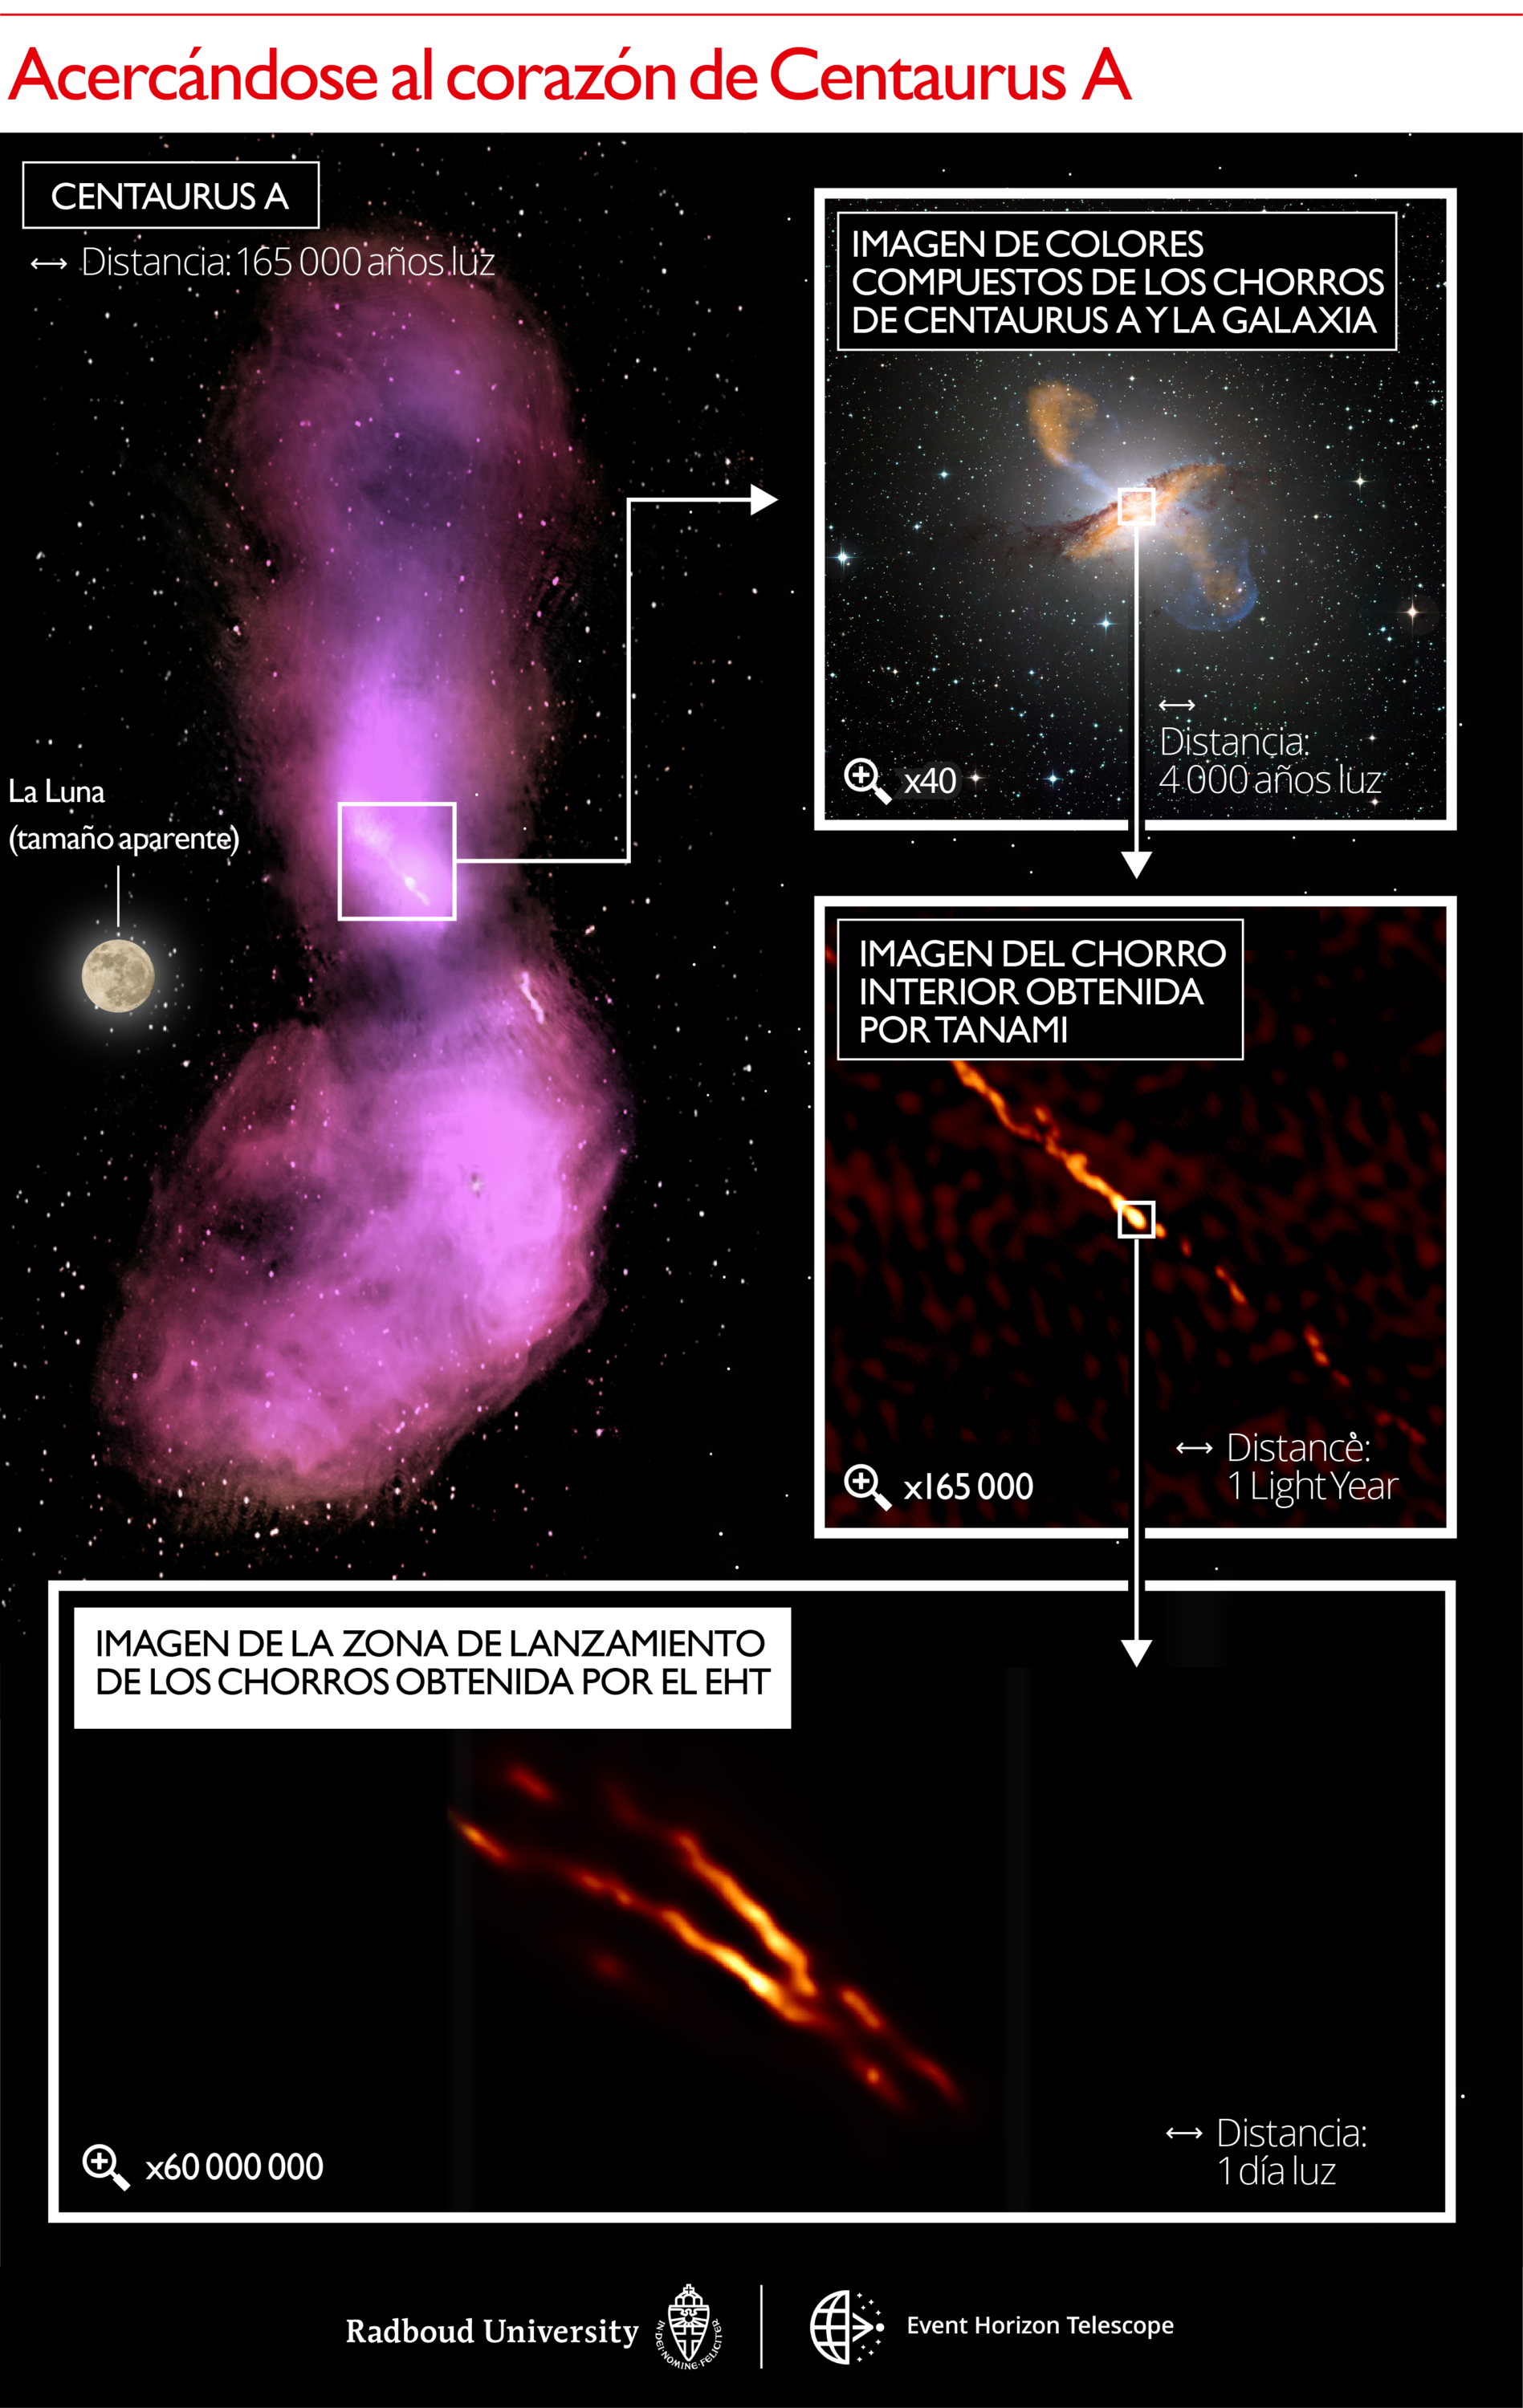 Escalas de distancia reveladas en el jet Centaurus A. La imagen superior izquierda muestra cómo el chorro se dispersa en nubes de gas que emiten ondas de radio, capturadas por los observatorios ATCA y Parkes. El panel superior derecho muestra una imagen en colores compuestos, con un zoom de 40x en comparación con el primer panel para que coincida con el tamaño de la propia galaxia. La emisión submilimétrica del chorro y el polvo en la galaxia medida por el instrumento LABOCA/APEX se muestra en naranja. La emisión de rayos X del chorro medido por la nave espacial Chandra se muestra en azul. La luz blanca visible de las estrellas de la galaxia ha sido capturada por el telescopio MPG/ESO de 2,2 metros. El siguiente panel a continuación muestra una imagen de zoom de 165000x del chorro de radio interno obtenido con los telescopios TANAMI. El panel inferior muestra la nueva imagen de mayor resolución de la región de lanzamiento del chorro obtenida con el EHT en longitudes de onda milimétricas con un zoom de 60000000x en la resolución del telescopio. Las barras de escala indicadas se muestran en años luz y días luz. Un año luz es igual a la distancia que recorre la luz en un año: unos nueve billones de kilómetros. En comparación, la distancia a la estrella conocida más cercana de nuestro Sol es de aproximadamente cuatro años luz. Un día luz es igual a la distancia que viaja la luz en un día: aproximadamente seis veces la distancia entre el Sol y Neptuno. Crédito: Universidad de Radboud; CSIRO/ATNF/I.Feain y col., R. Morganti y col., N. Junkes y col.; ESO/WFI; MPIfR/ESO/APEX/A. Weiss et al.; NASA/CXC/CfA/R. Kraft y col.; TANAMI/C. Mueller et al .; EHT/M. Janssen y col.